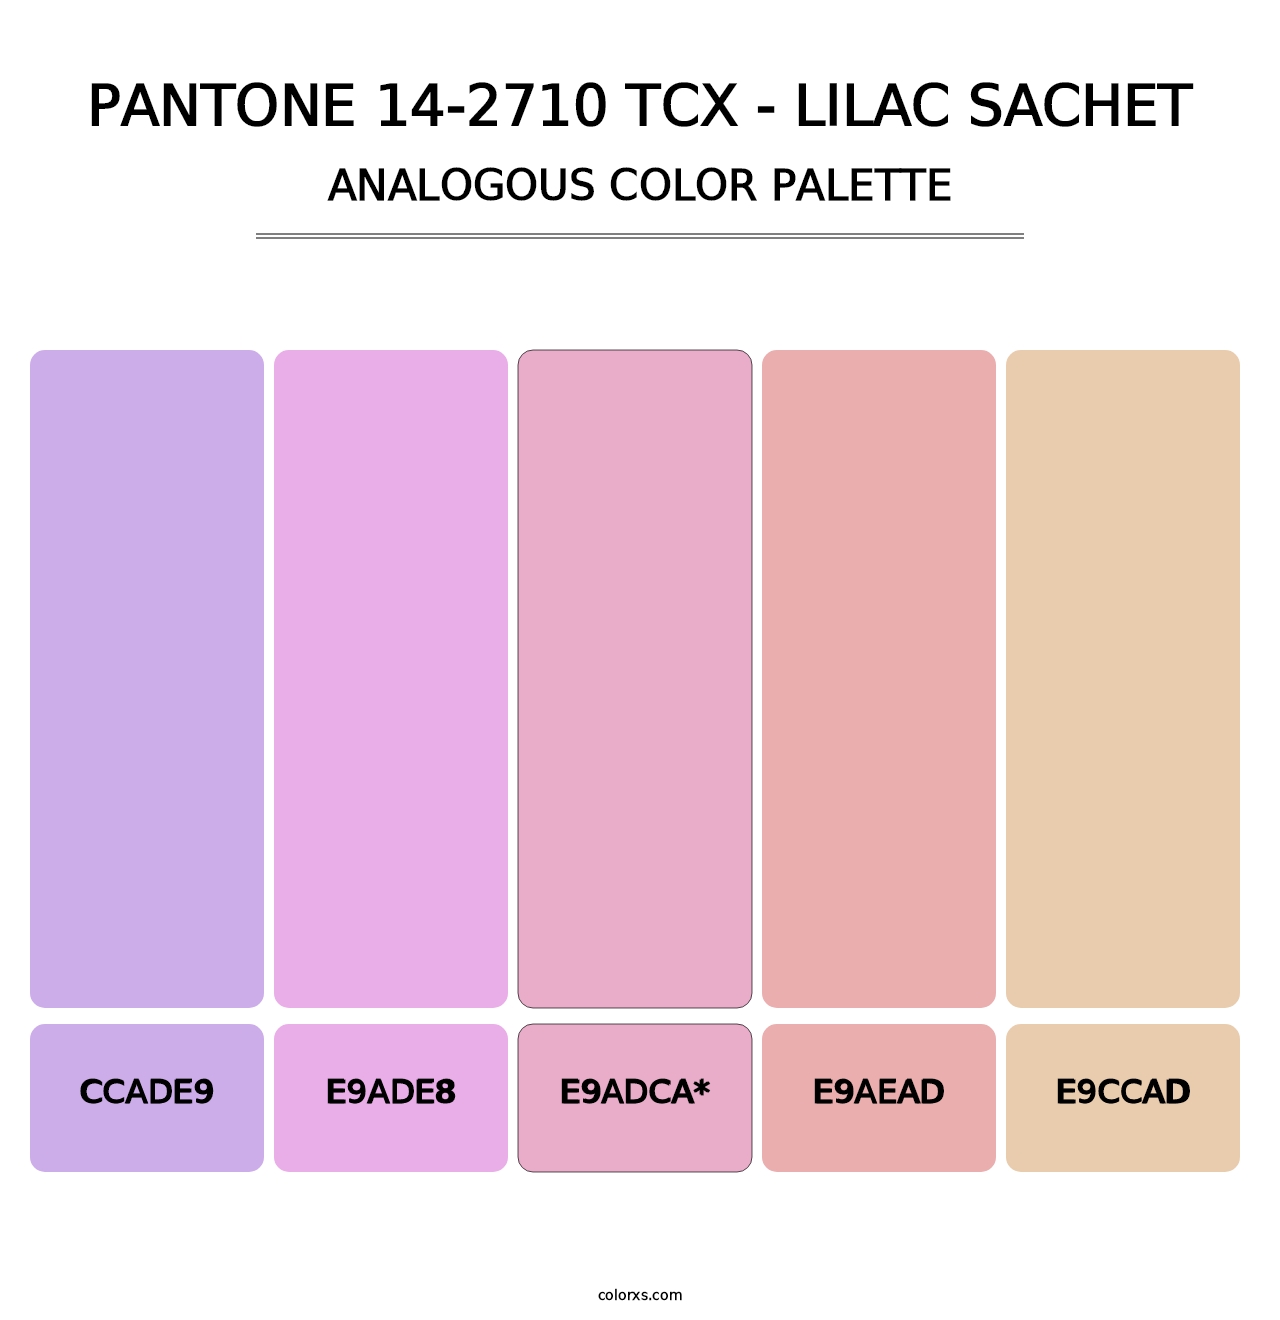 PANTONE 14-2710 TCX - Lilac Sachet - Analogous Color Palette